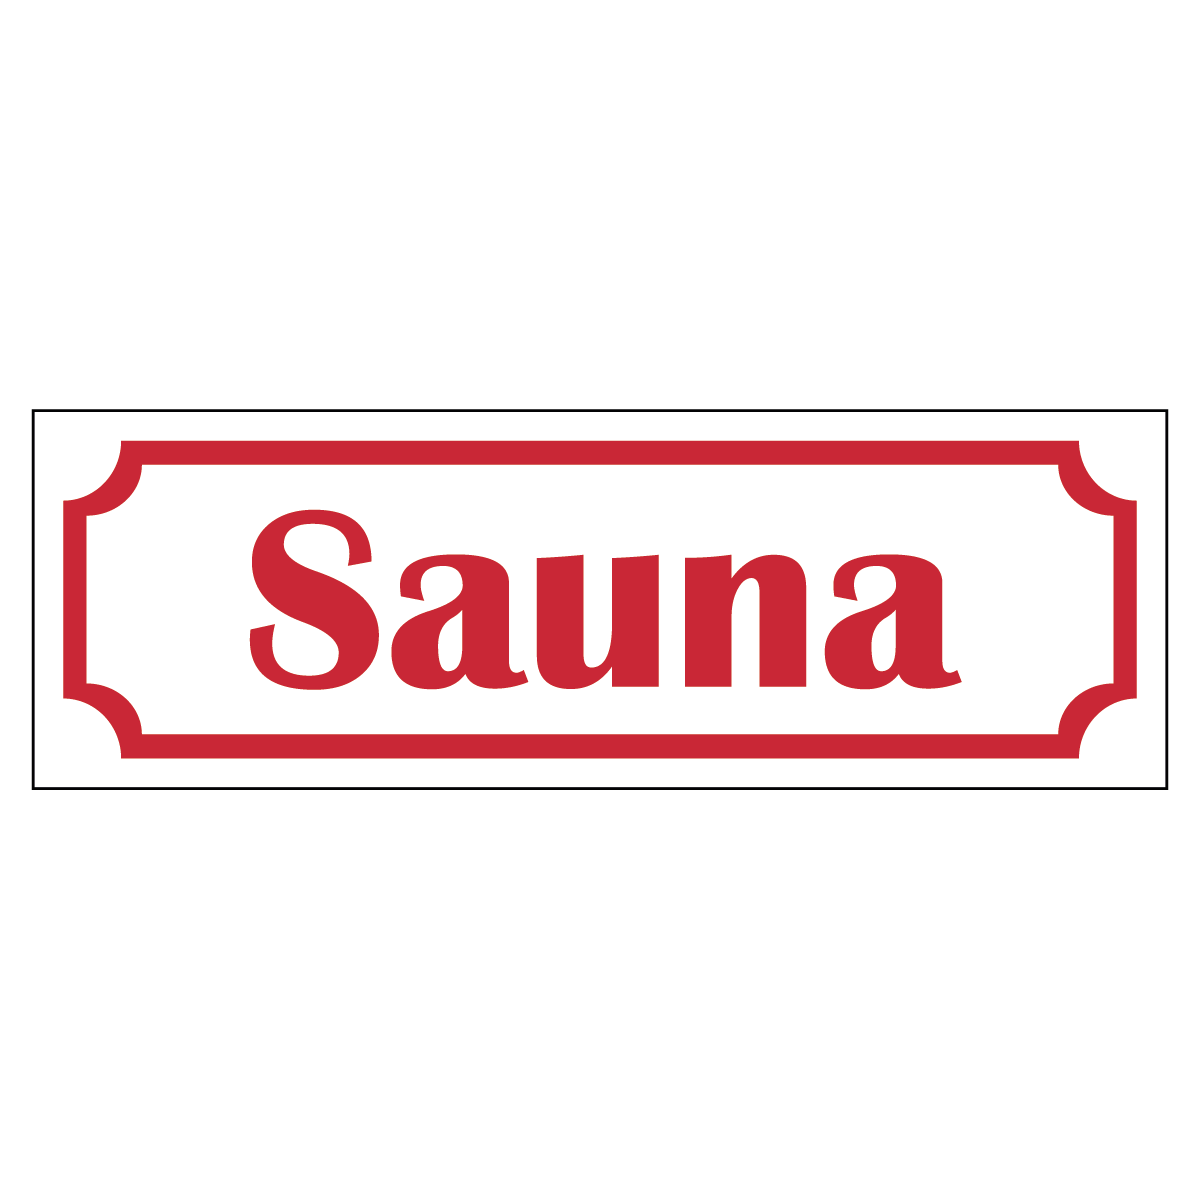 Sauna - Skylt - 150x50mm - Vit - Röd